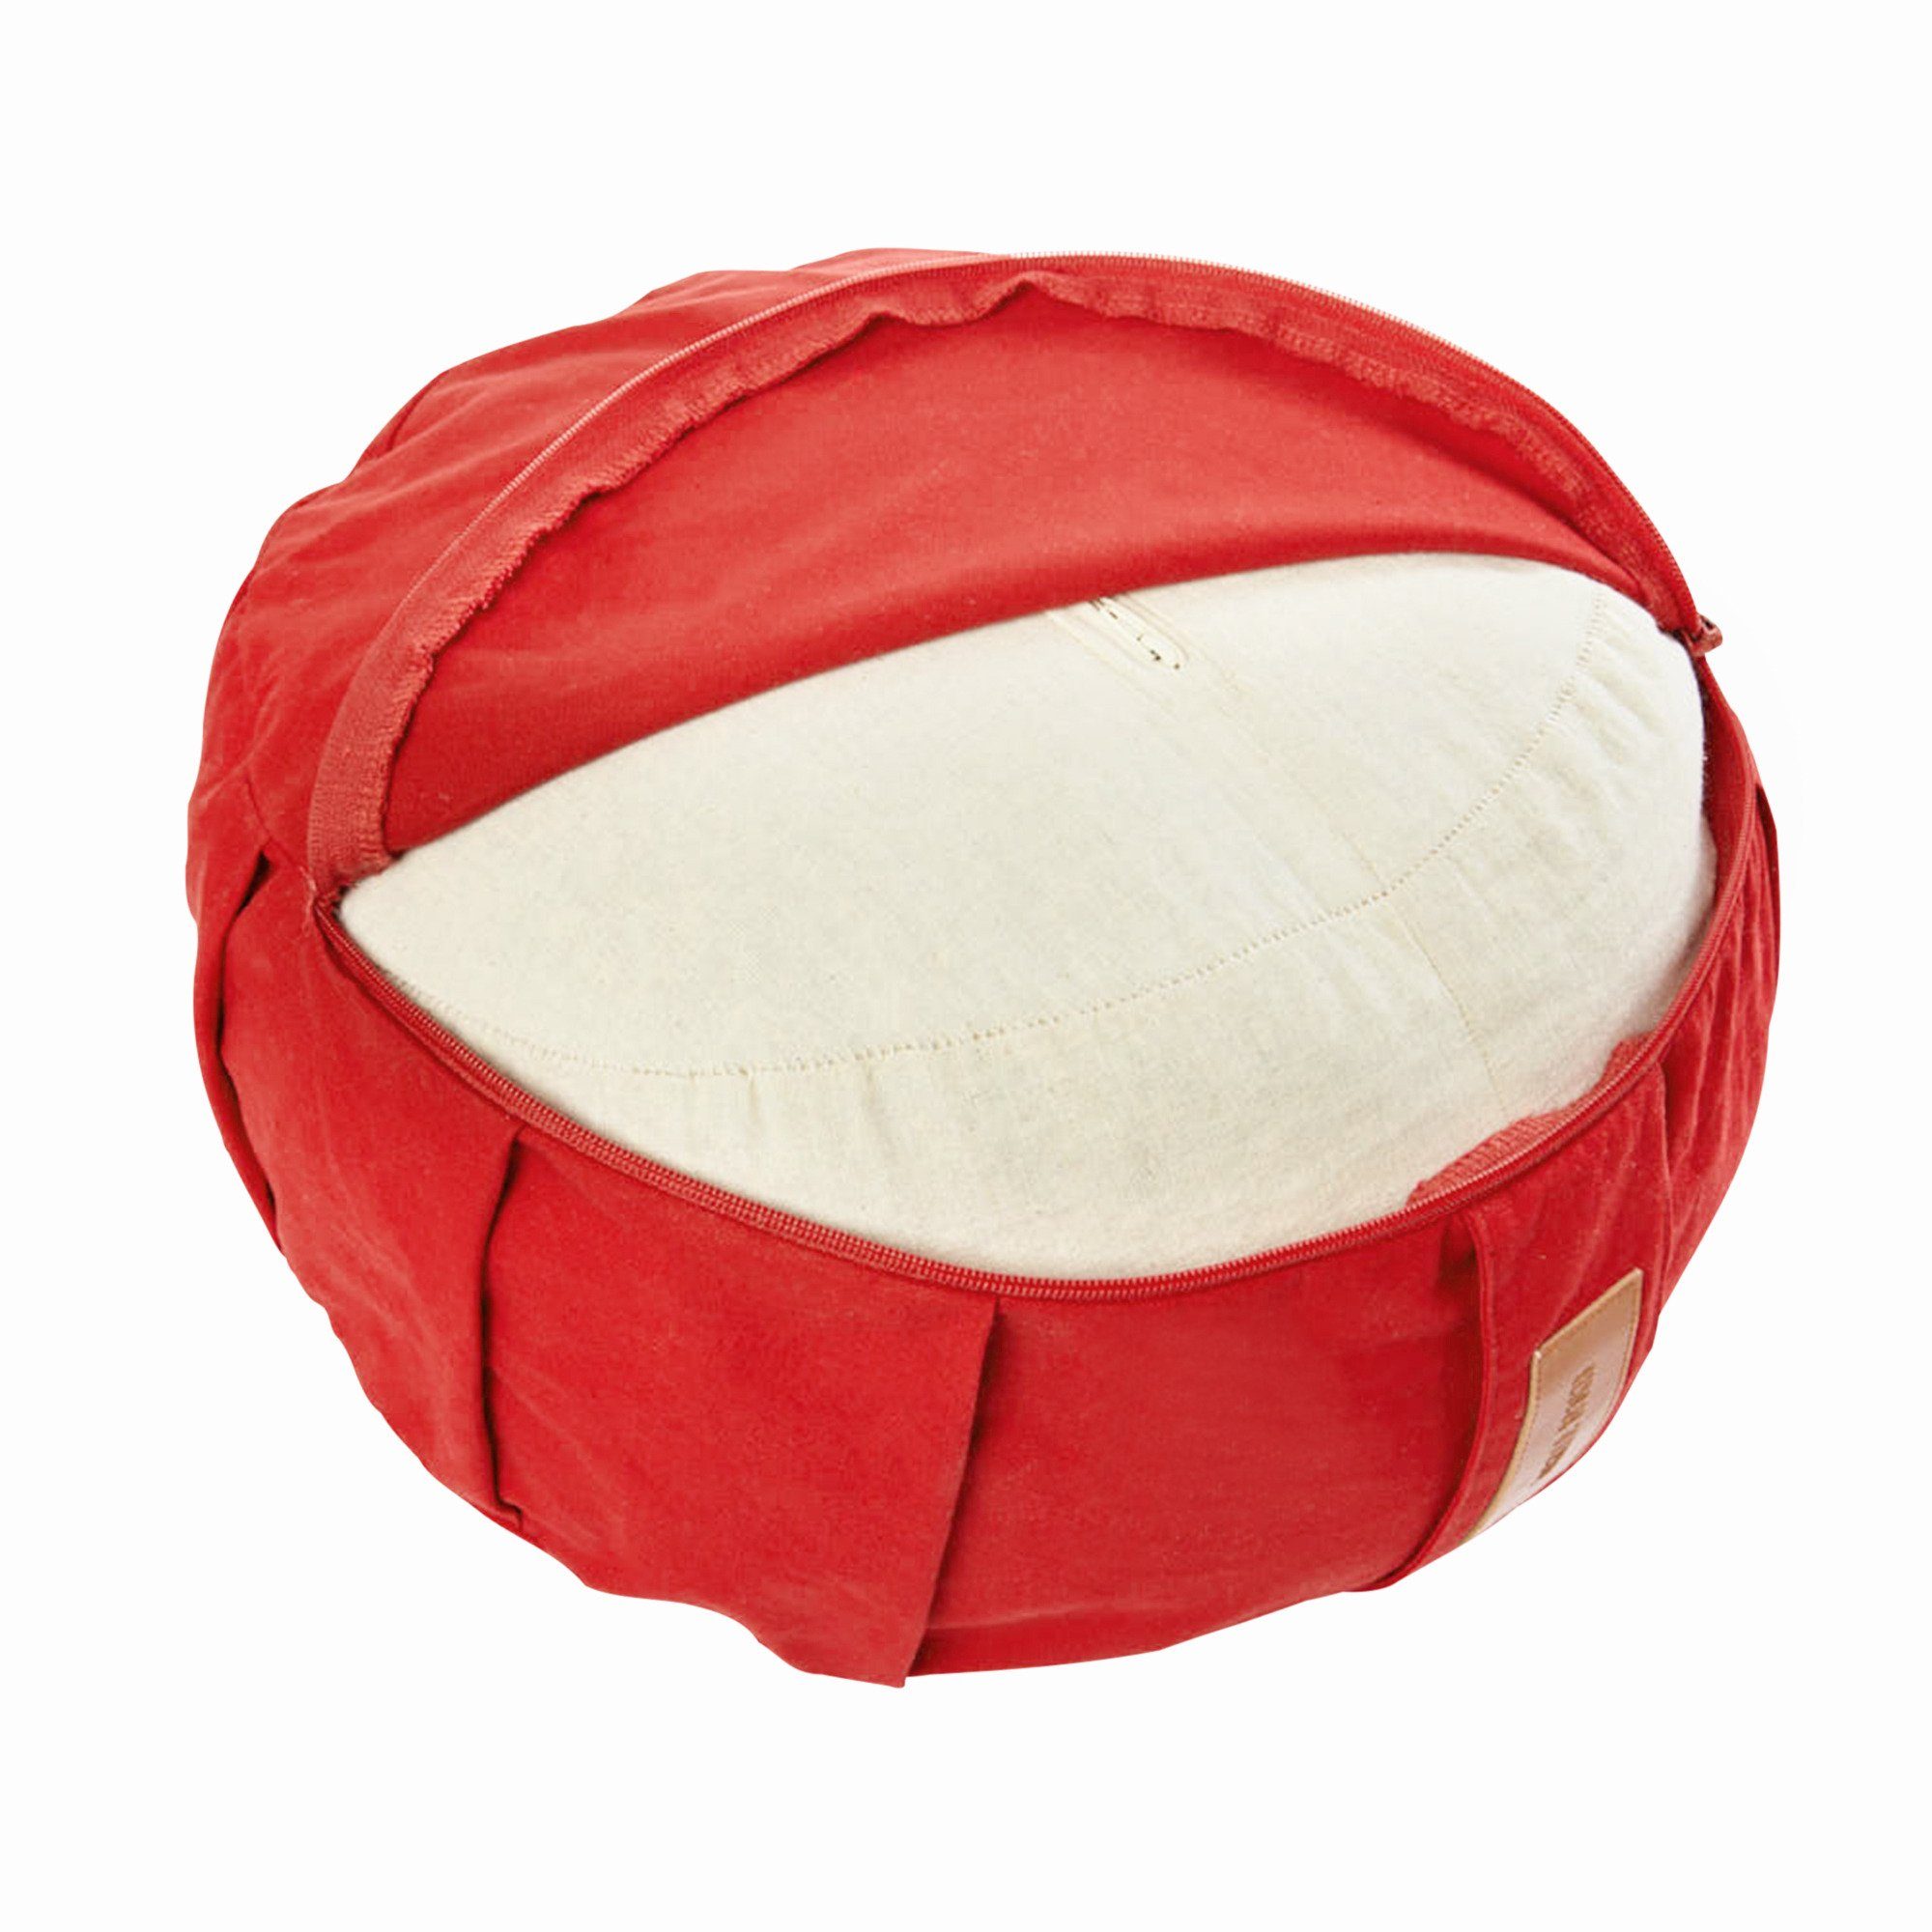 SPORTS Sitzhöhe GORILLA Bodenkissen Yogakissen - Rot 18cm Meditationskissen, 100%Baumwolle, Rund,